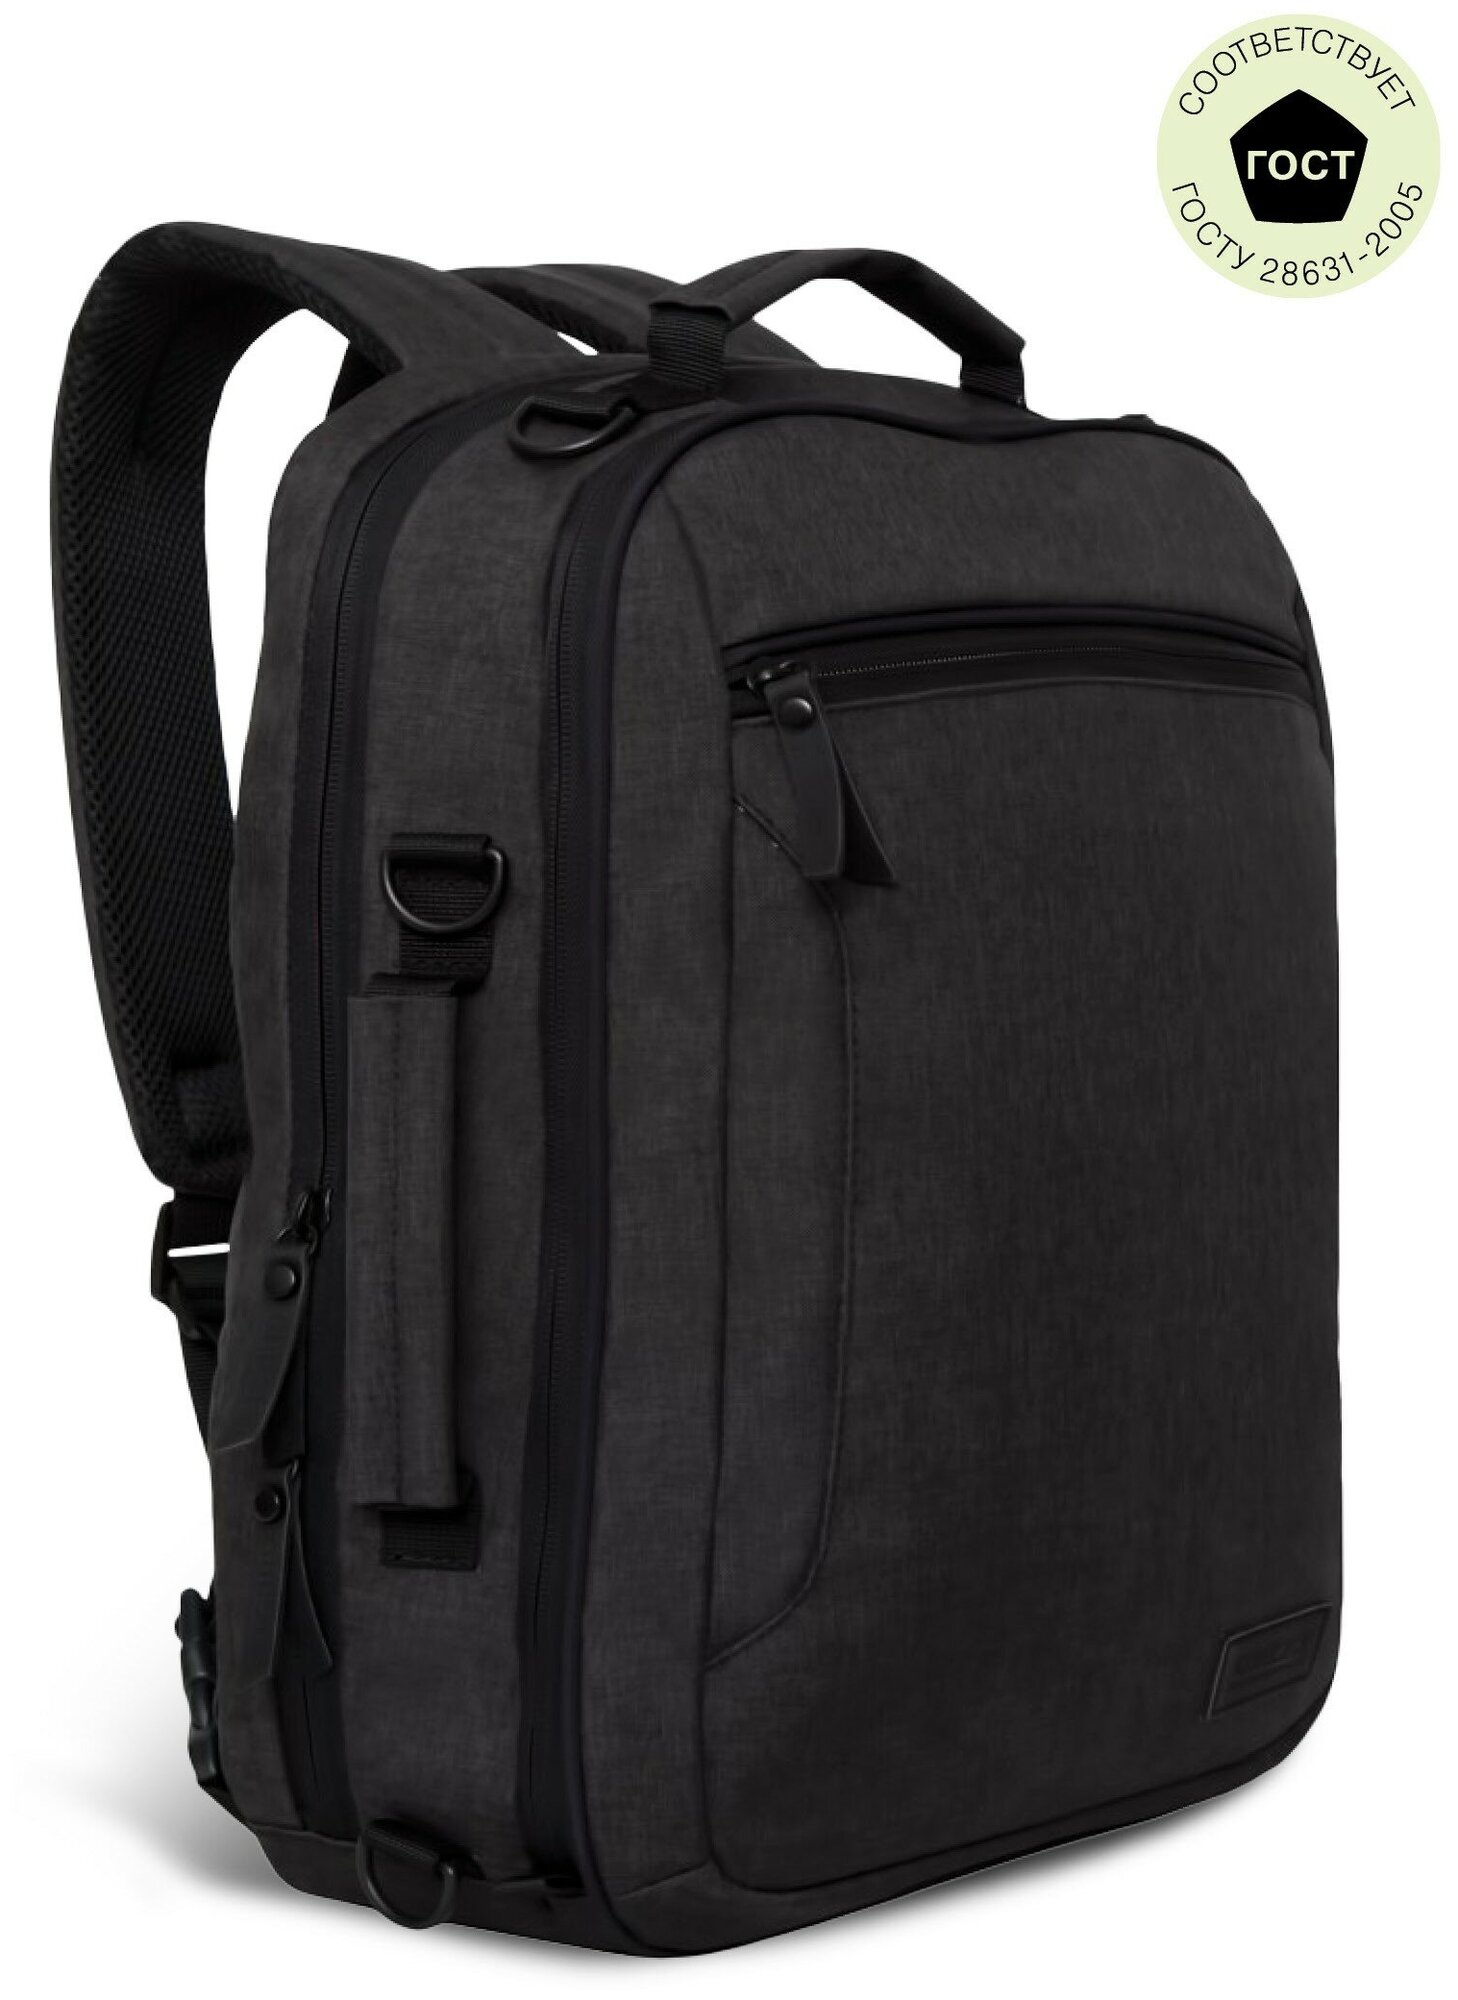 Бизнес рюкзак-сумка трансформер с USB карманом для ноутбука 15" потайным карманом мужской RU-805-11